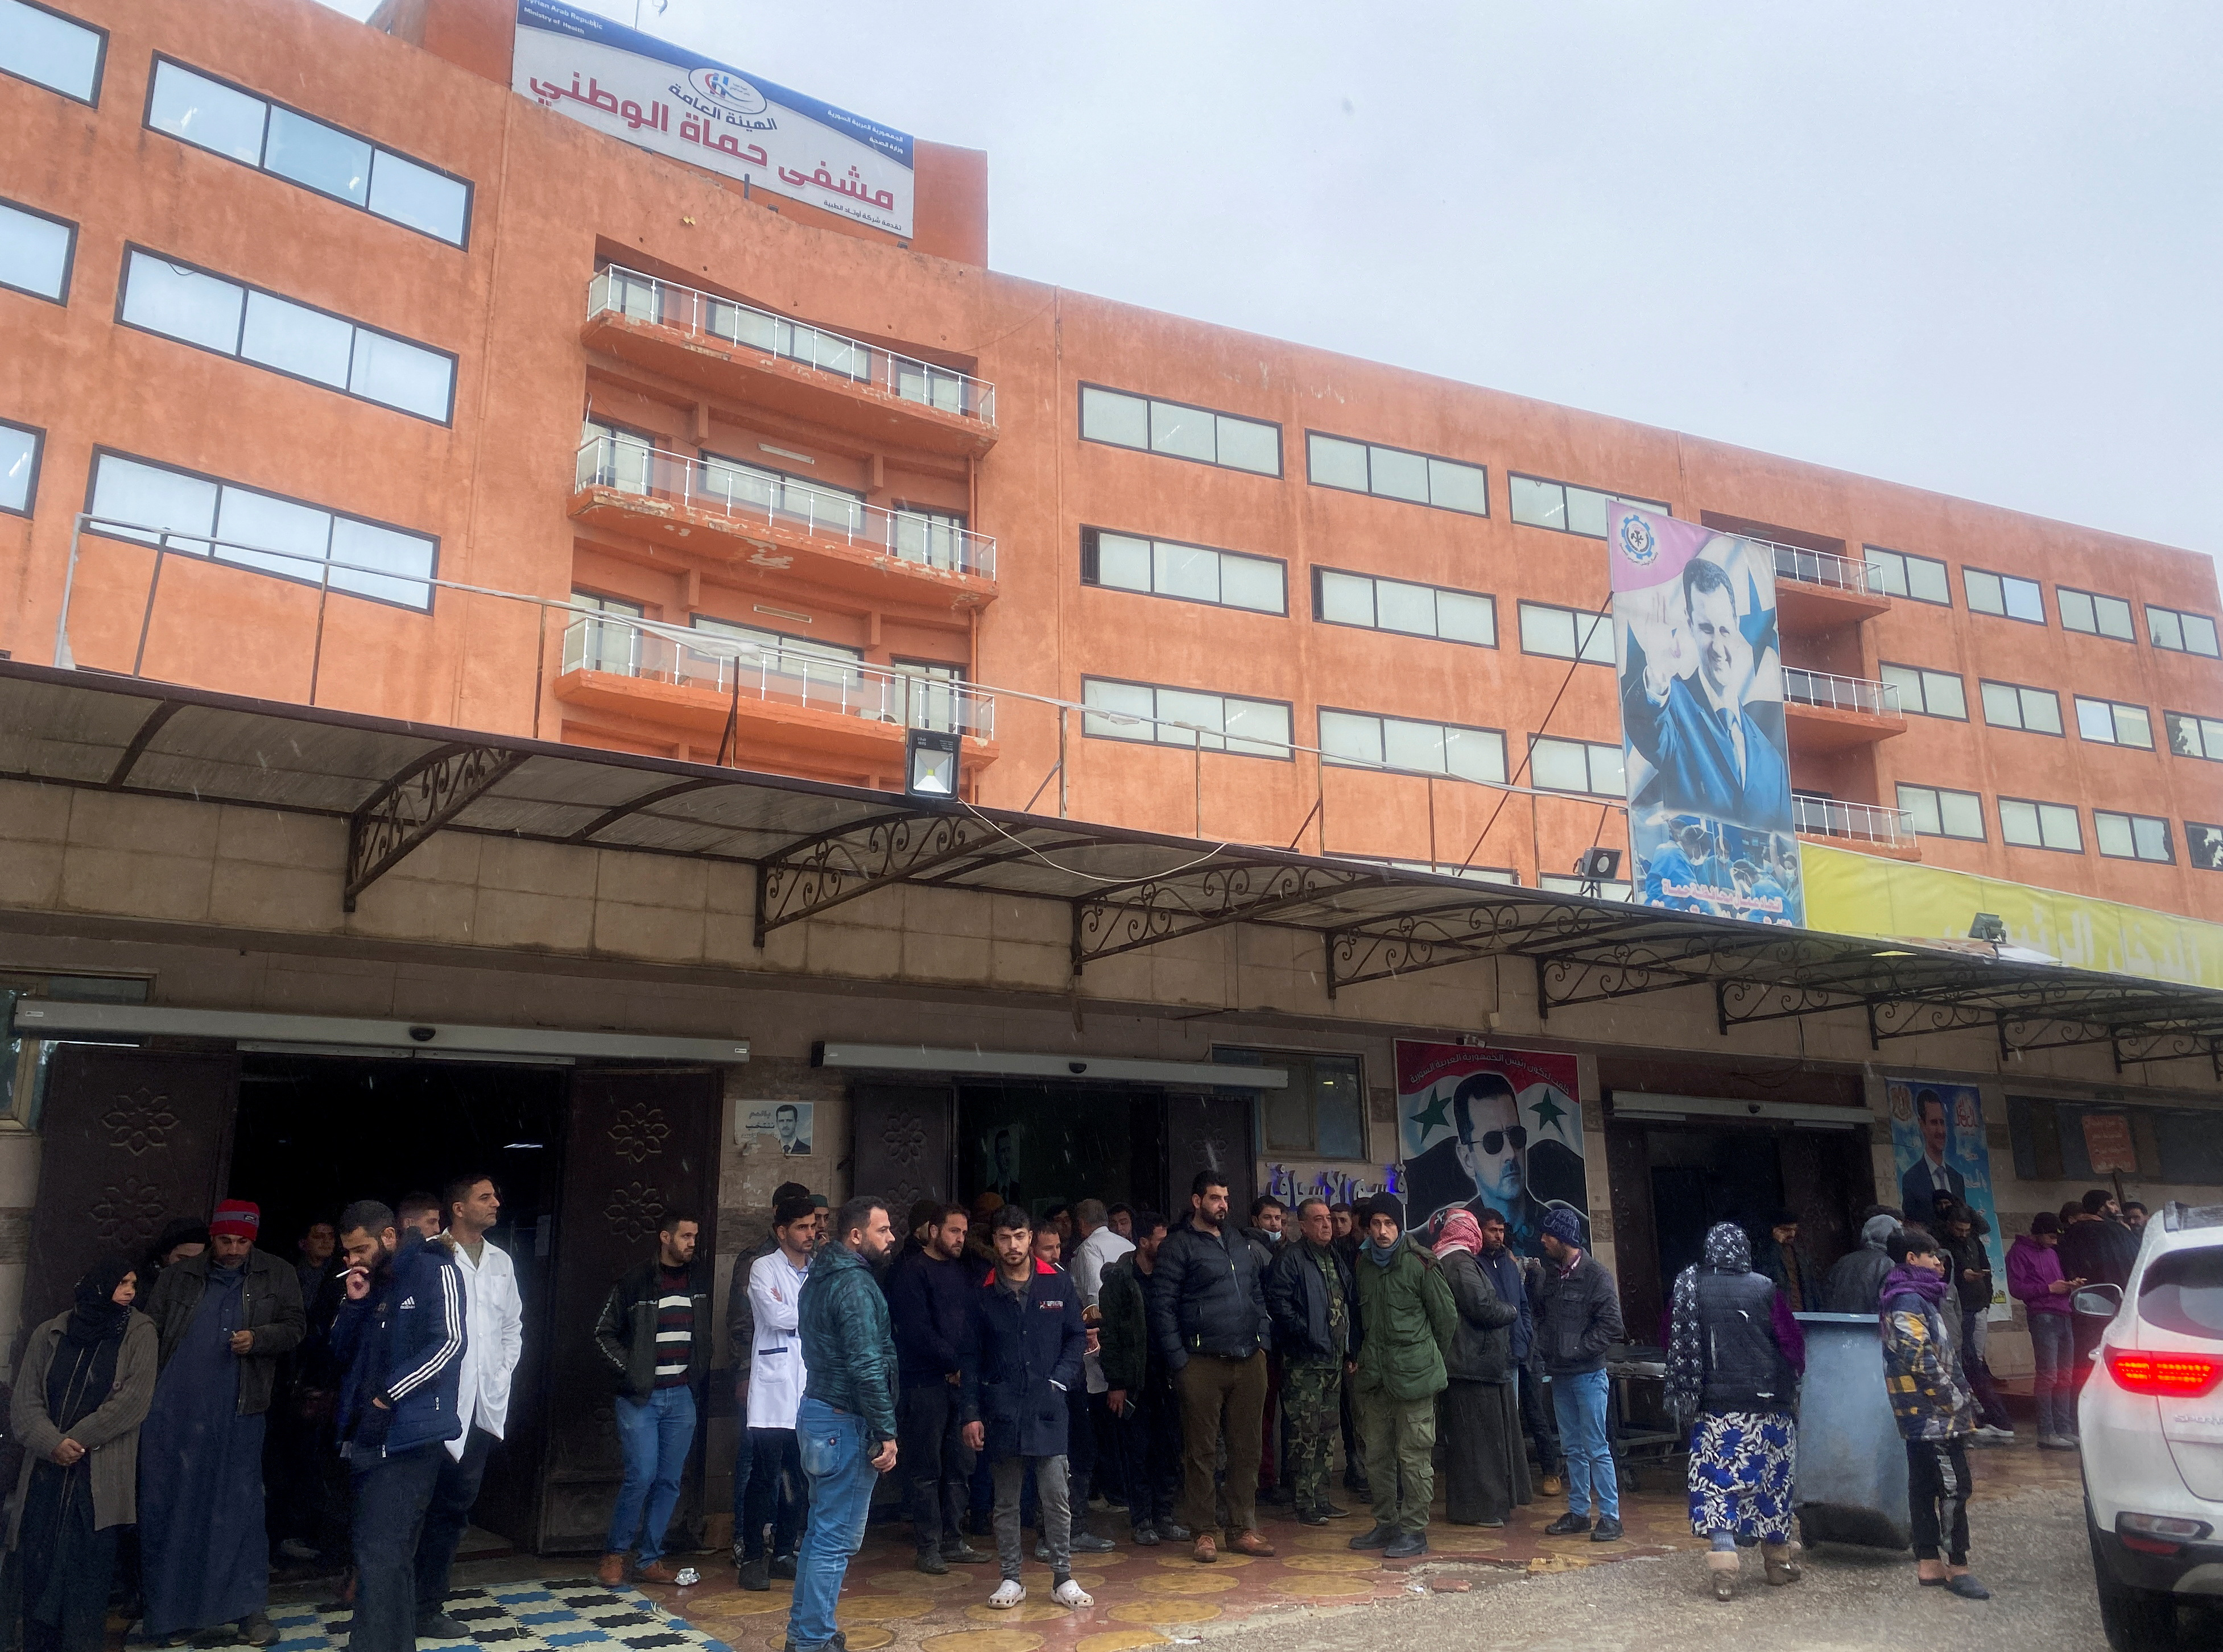 Las personas se reúnen frente a un hospital, luego de un terremoto, en Hama, Siria.
